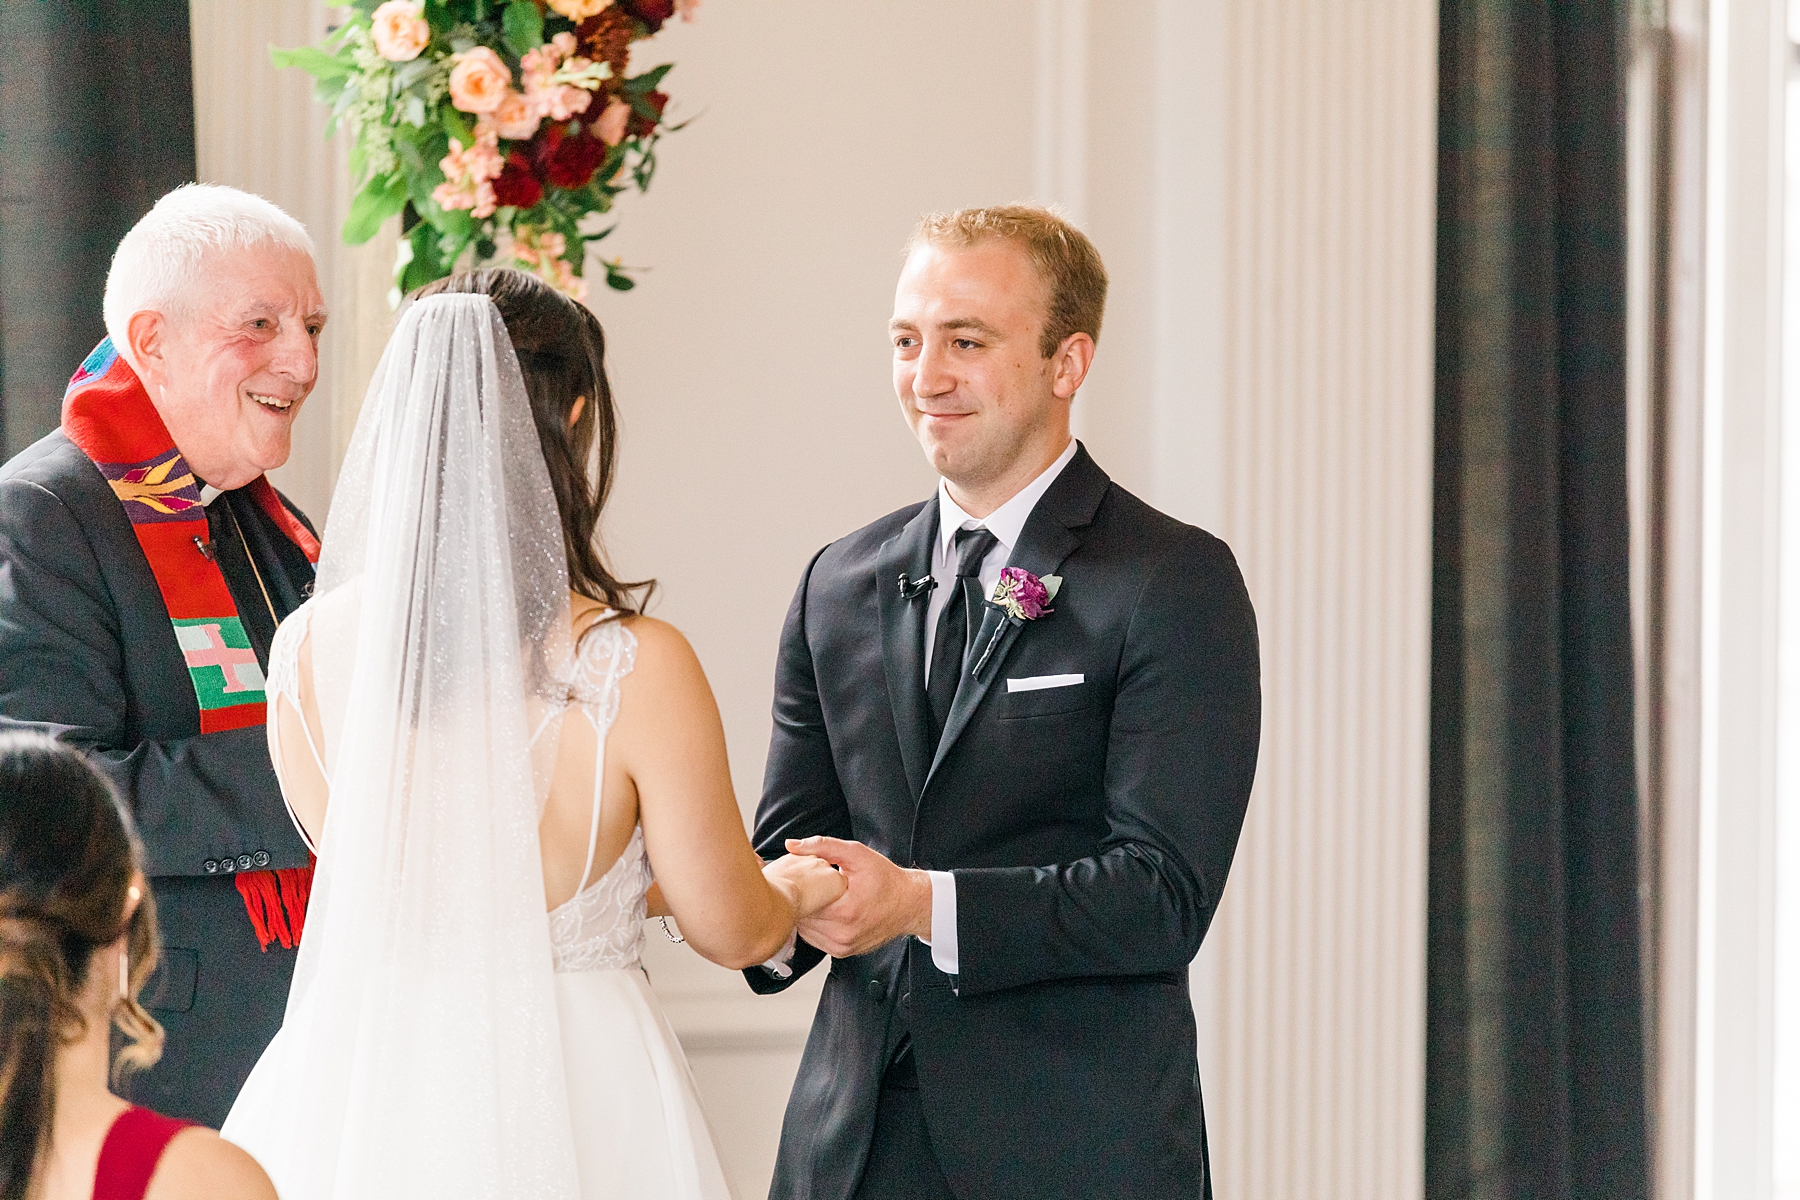 couple exchange vows at wedding ceremony in Philadelphia